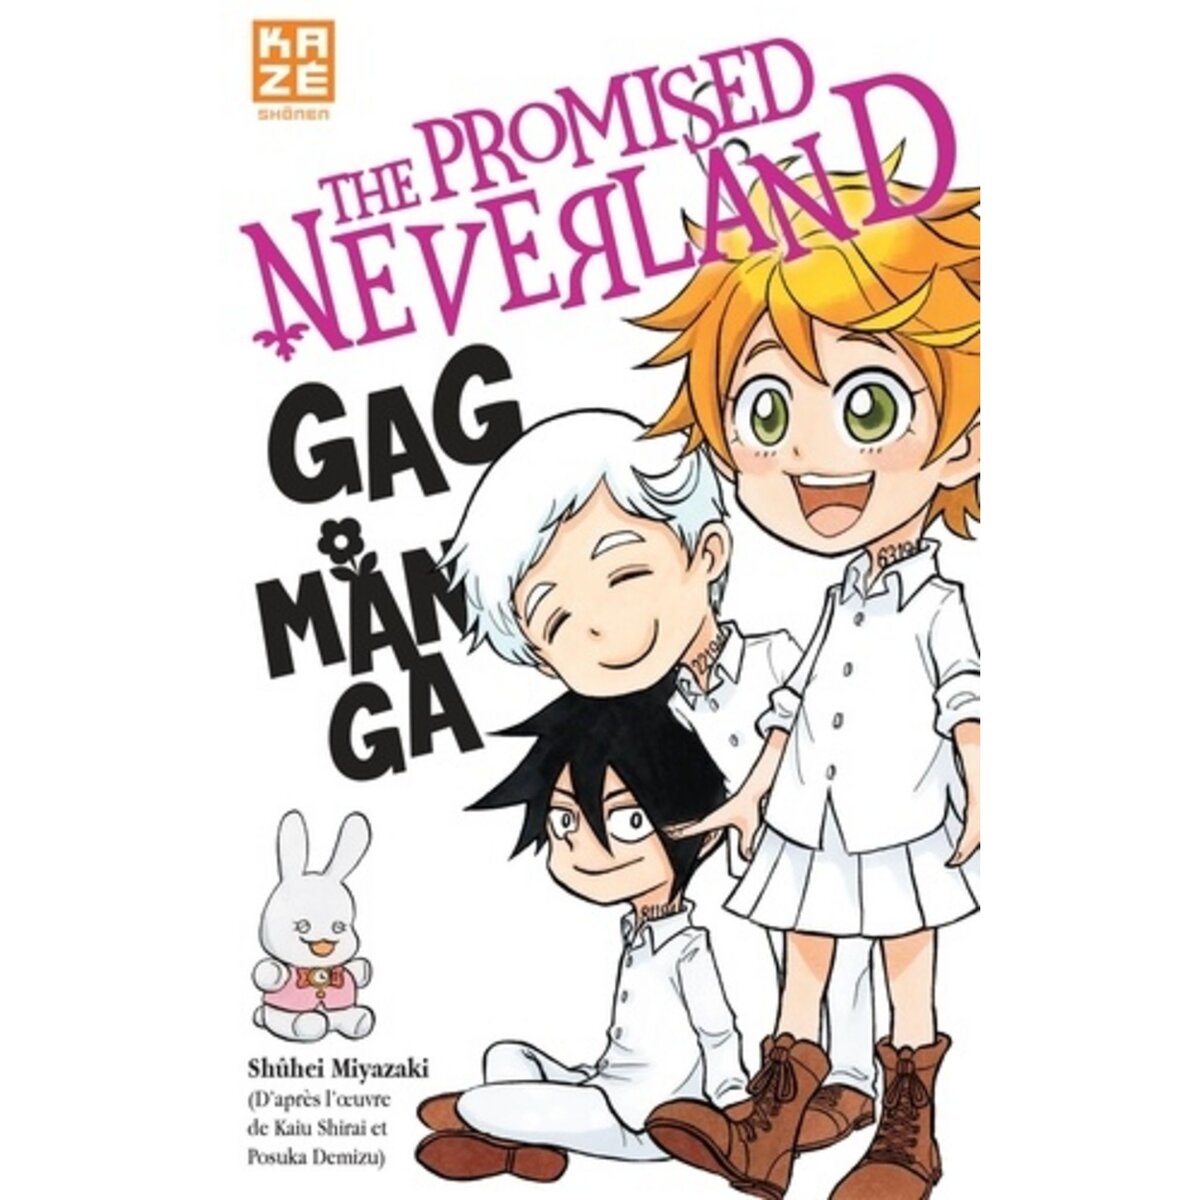  THE PROMISED NEVERLAND : GAG MANGA, Shirai Kaiu